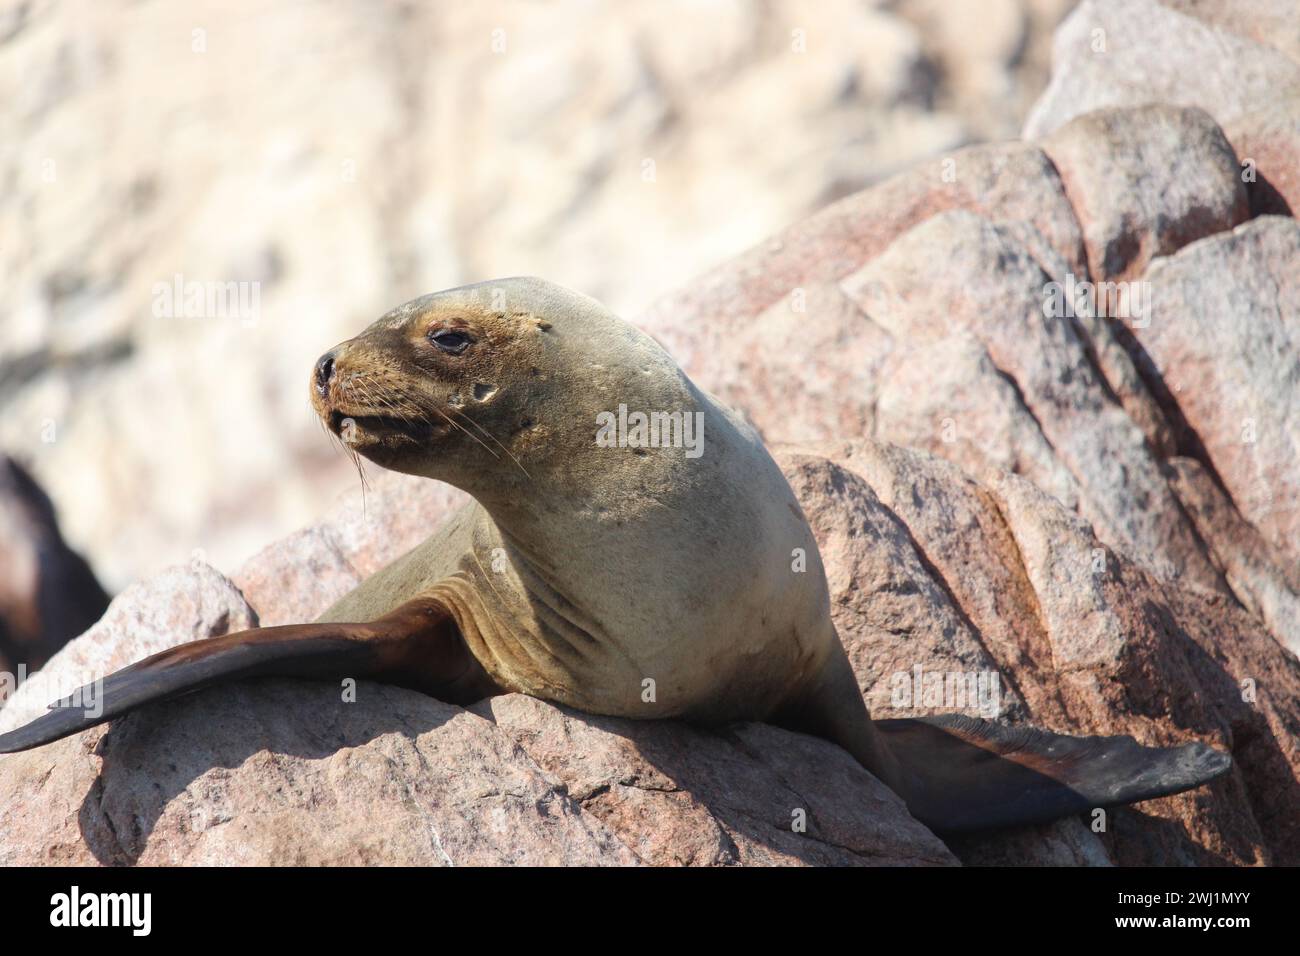 Leone marino alle Isole Ballestas in Perù Foto Stock